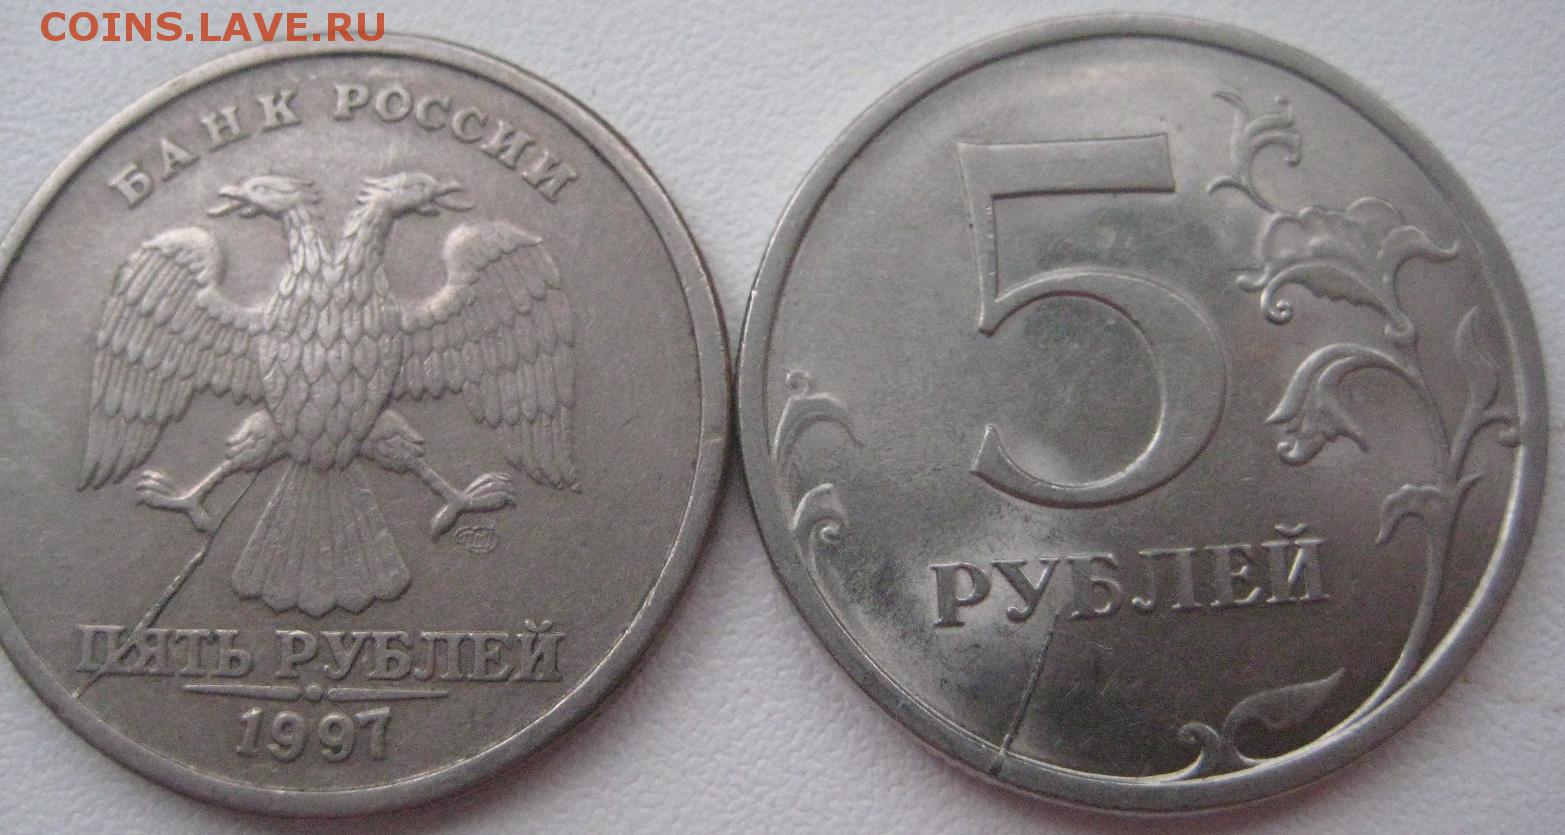 Аукцион 5 рублей. 5 Рублей 1998 Московский монетный двор. 5 Рублей 1998 ММД. 5 Рублей 2008 СПМД. 5 Рублей 2008 года СПМД.